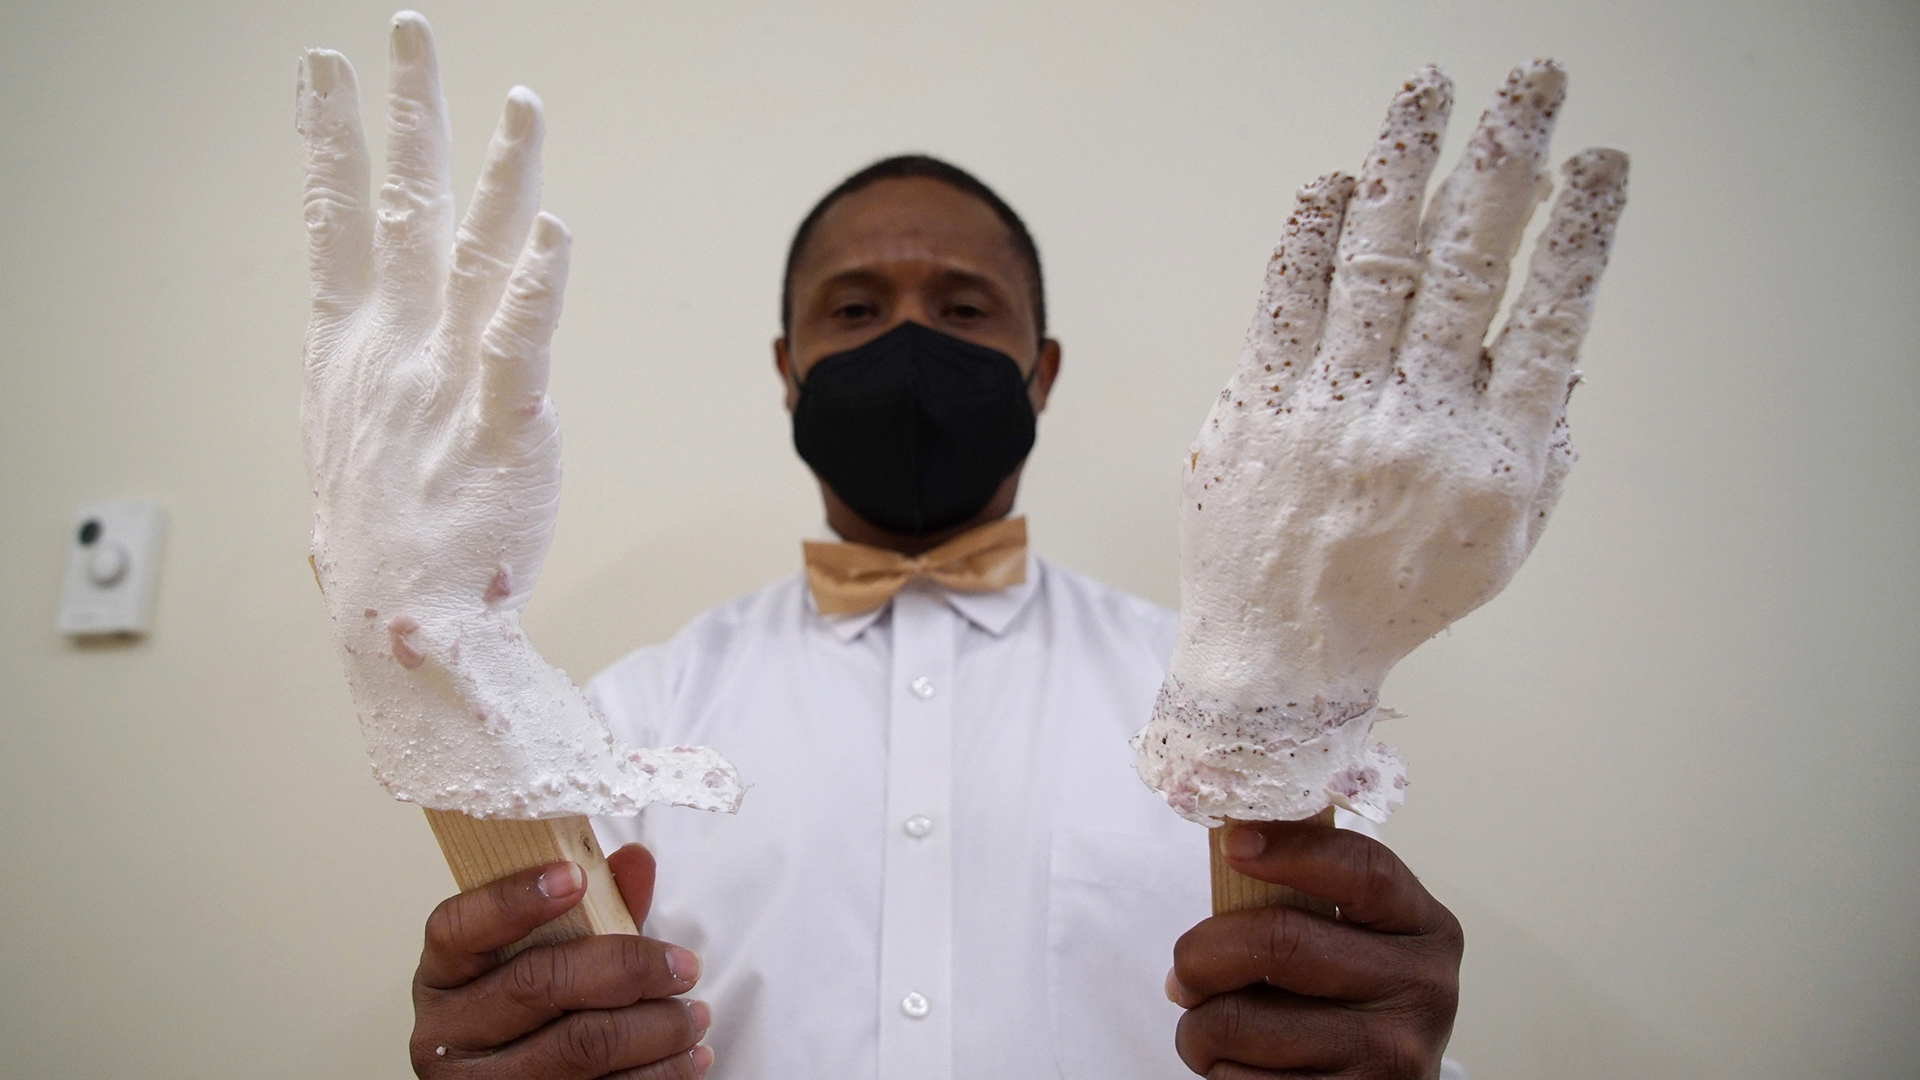 DeAndre Muhammad sostiene moldes de plástico de sus manos  (Foto AP/Allen G. Breed)

